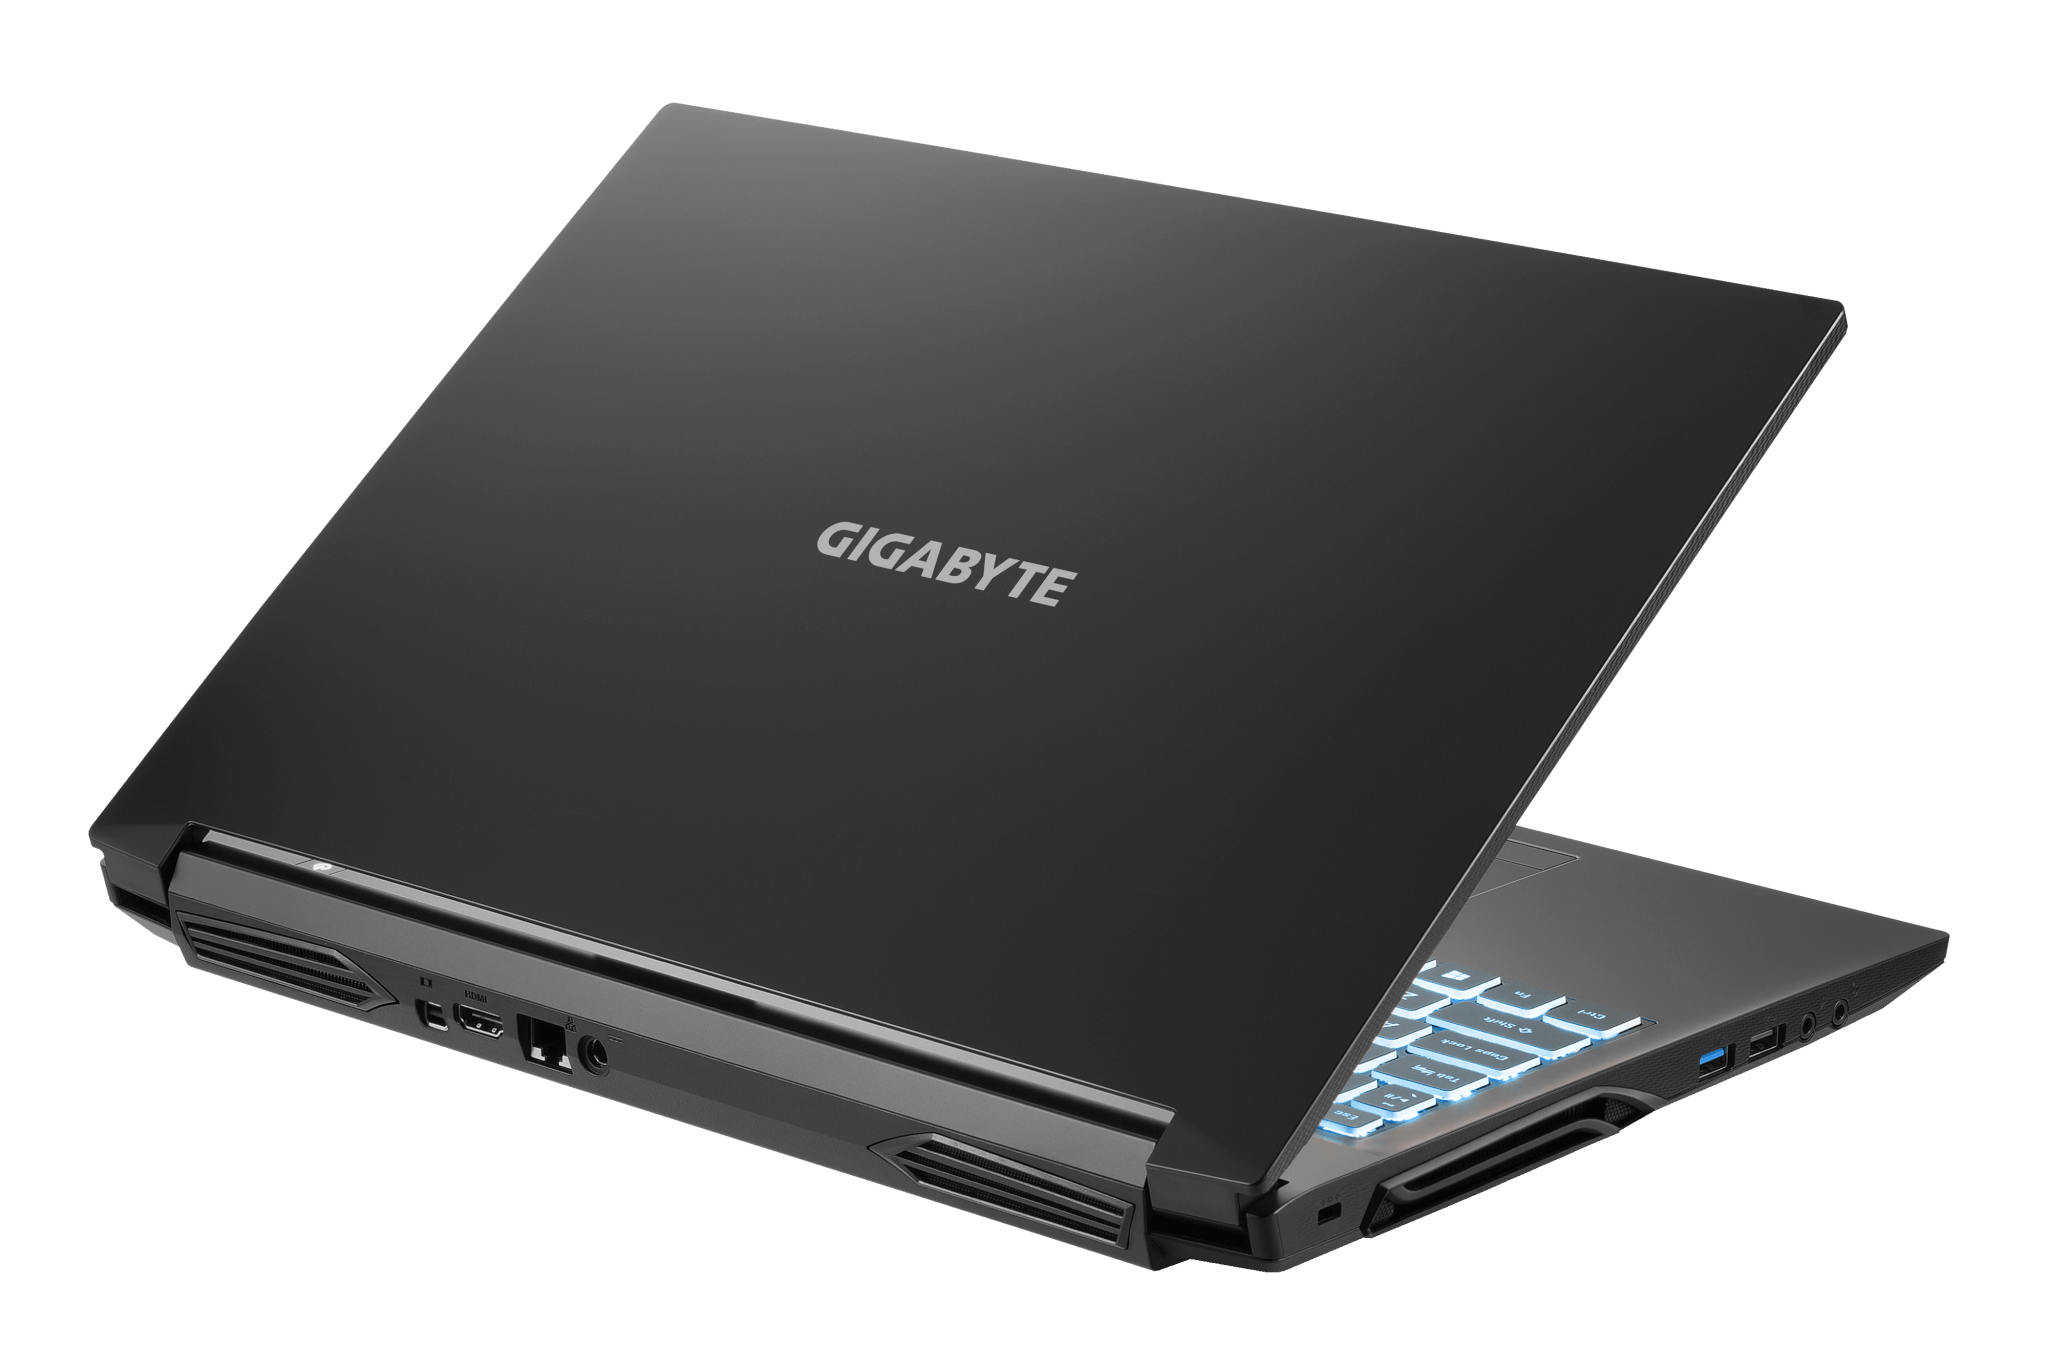 Gigabyte g5 kc. Ноутбук Gigabyte g5 Kc-5ru1130sh, 15.6". Ноутбук игровой Gigabyte g5 KD-52ee123sd. Gigabyte g5 Kc-5ru1130sh.